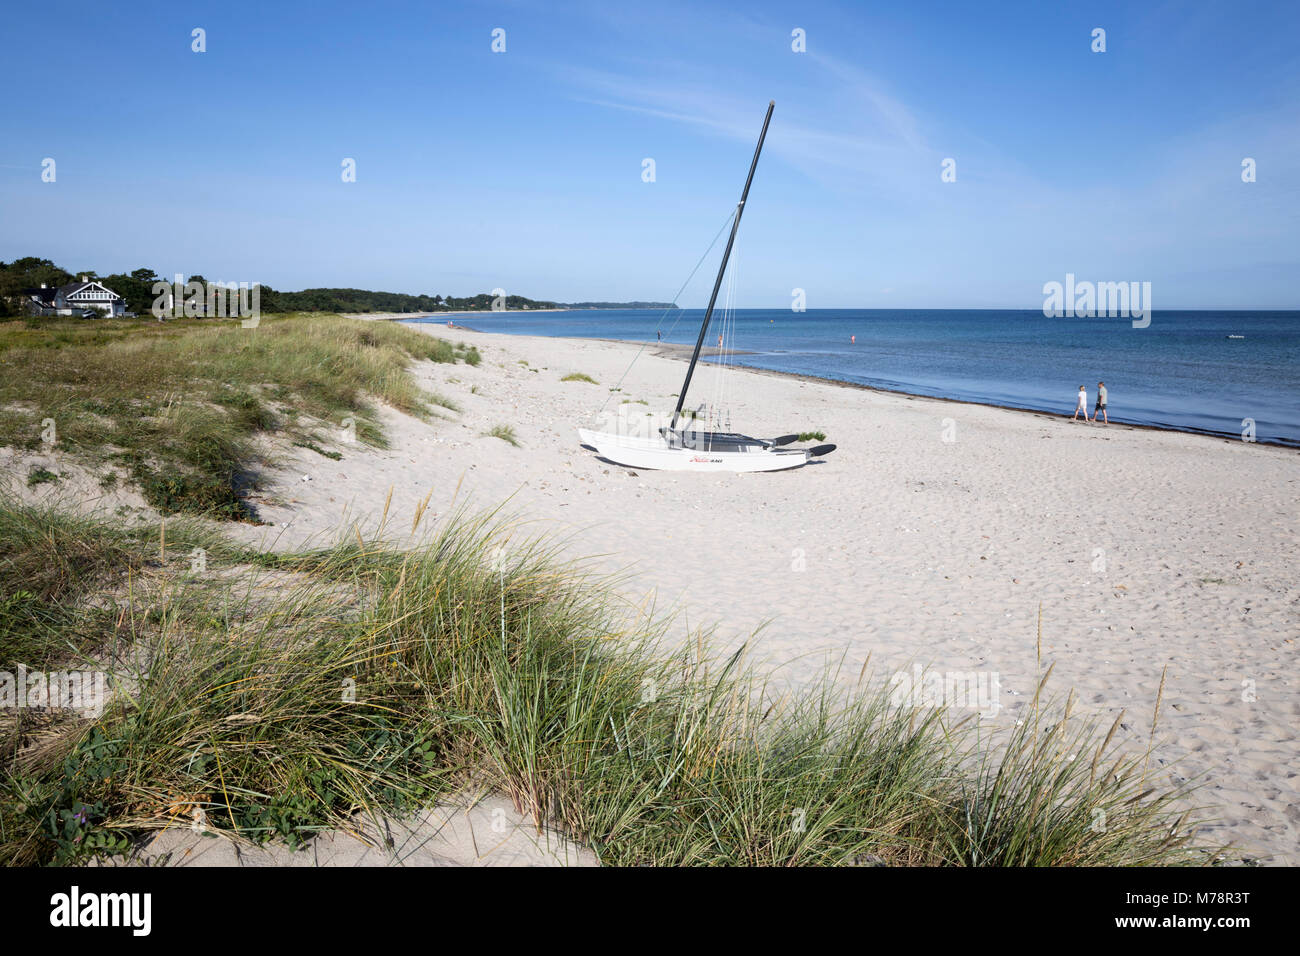 Hornbæk beach avec du sable blanc et des dunes de sable, Hornbæk, le Kattegat, la Nouvelle-Zélande, le Danemark, la Scandinavie, l'Europe Banque D'Images